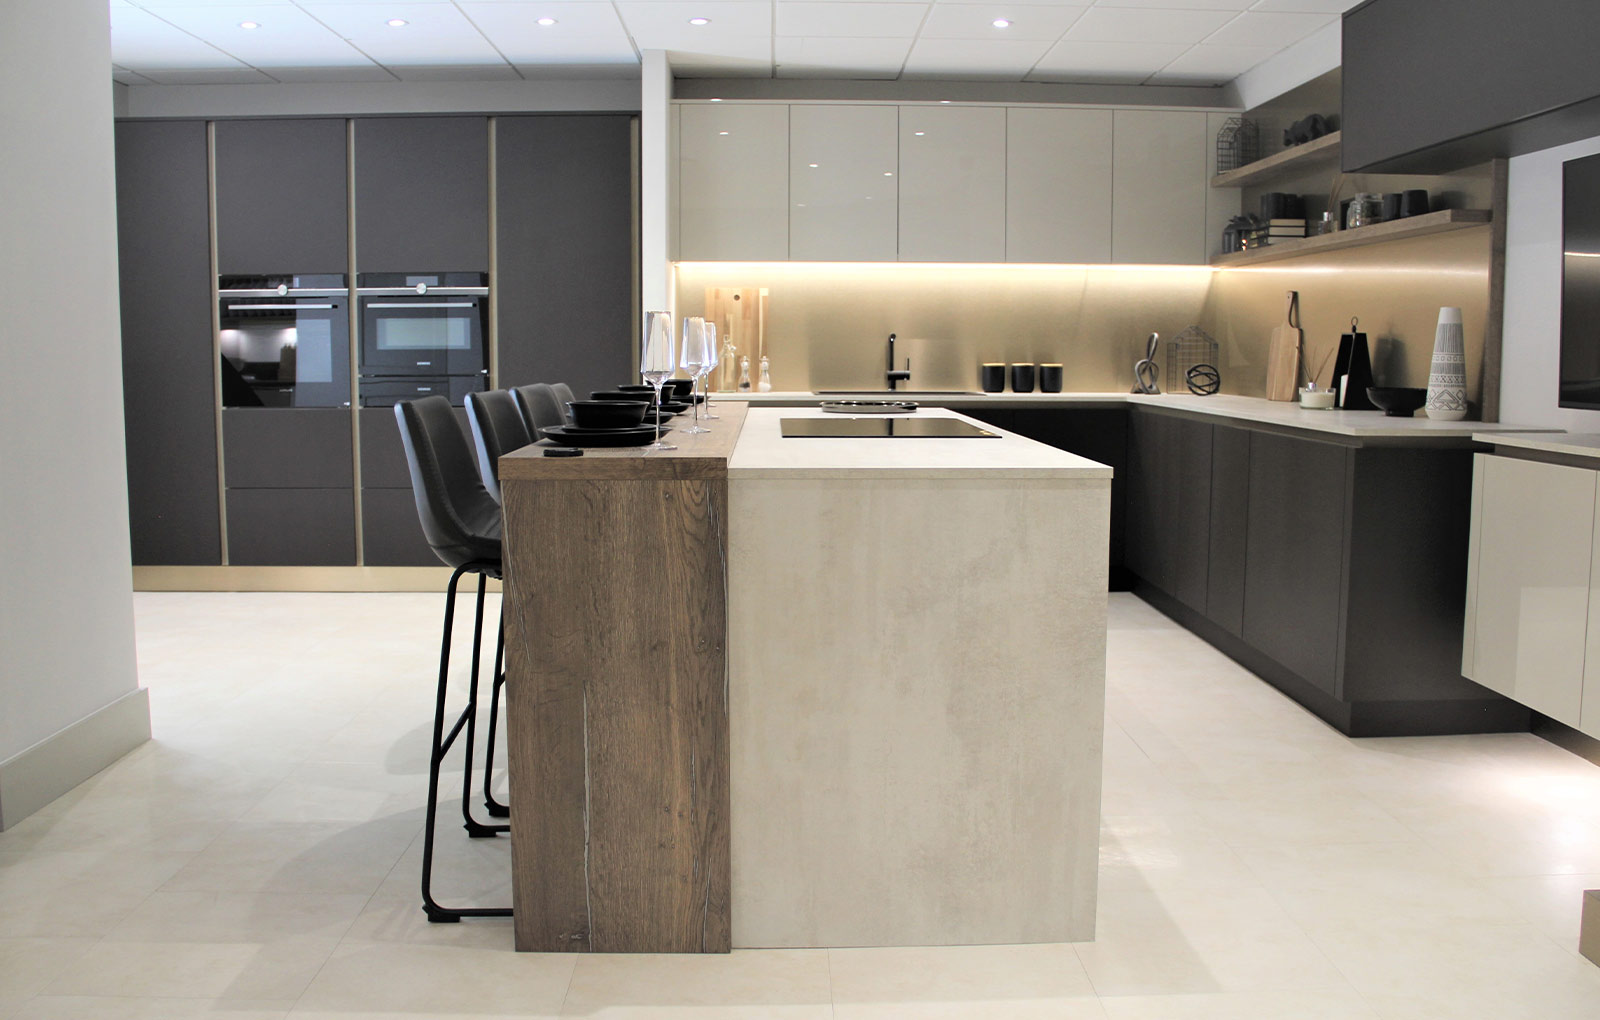 luxury modern kitchen design photo gallery